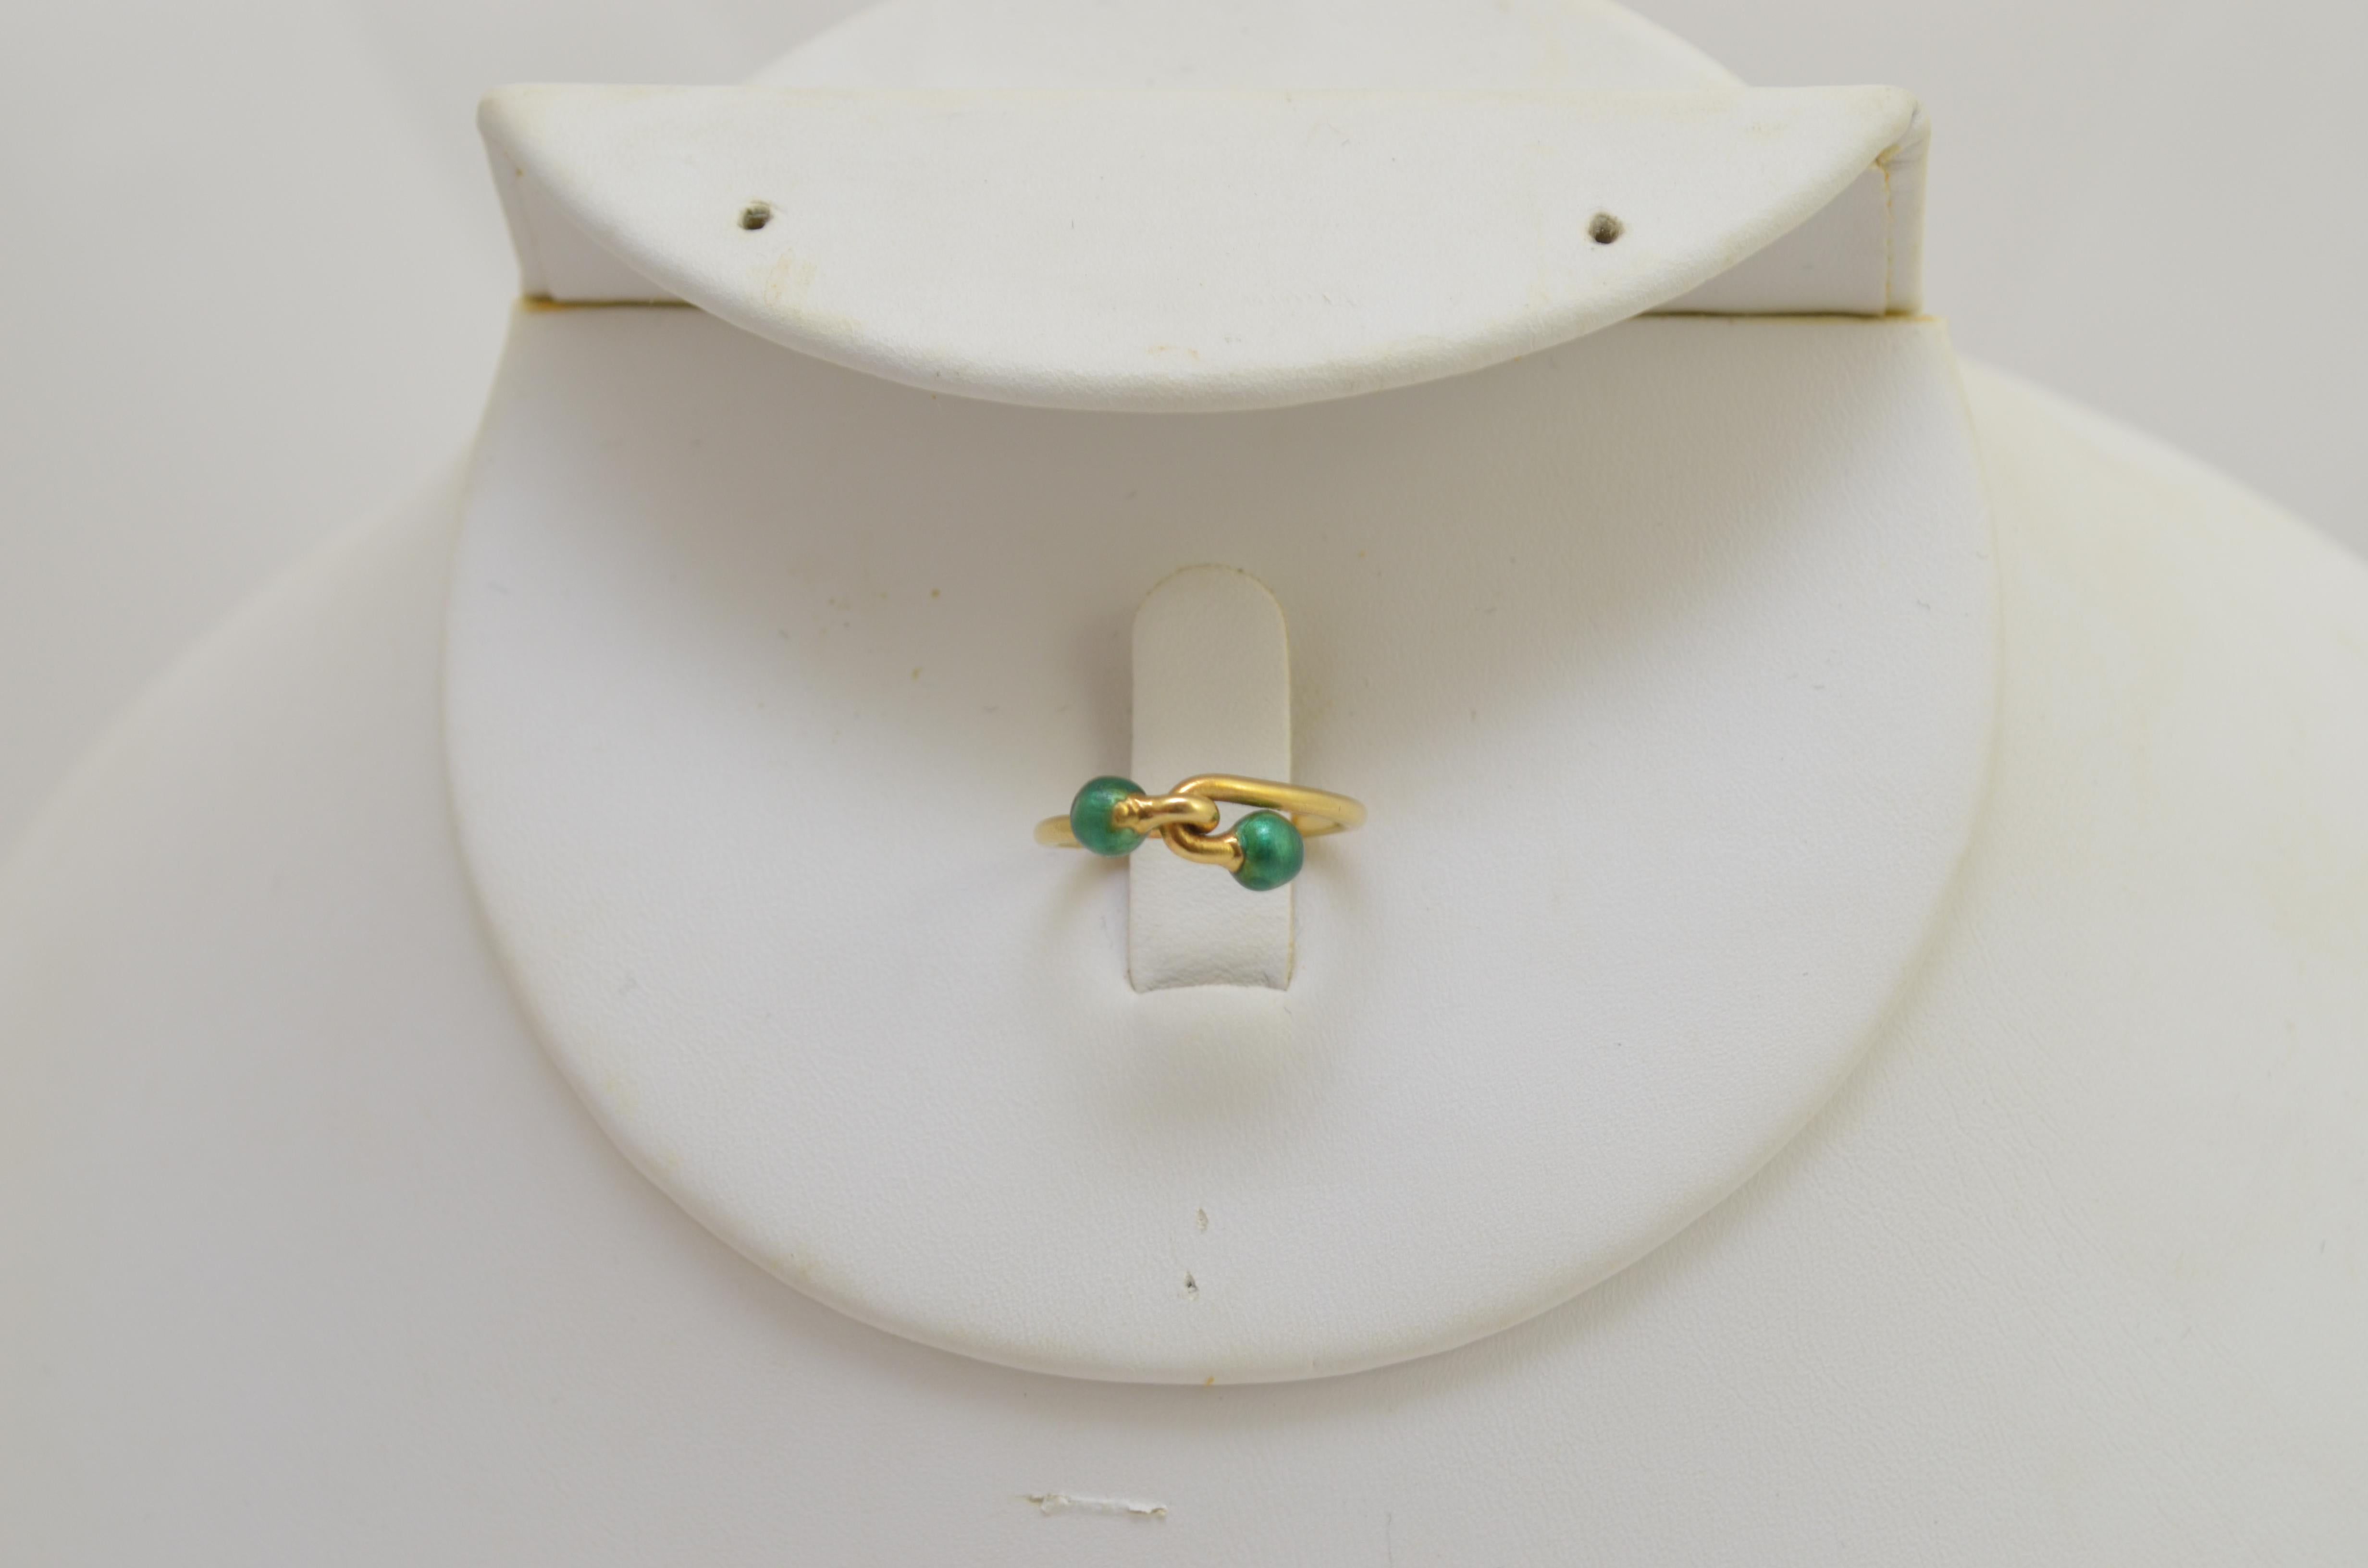 Gucci Ring in 18k Gelb mit einem Knotenmuster mit grünen Kugelspitzen. Der Ring hat die Größe 4,5, hergestellt in Italien.